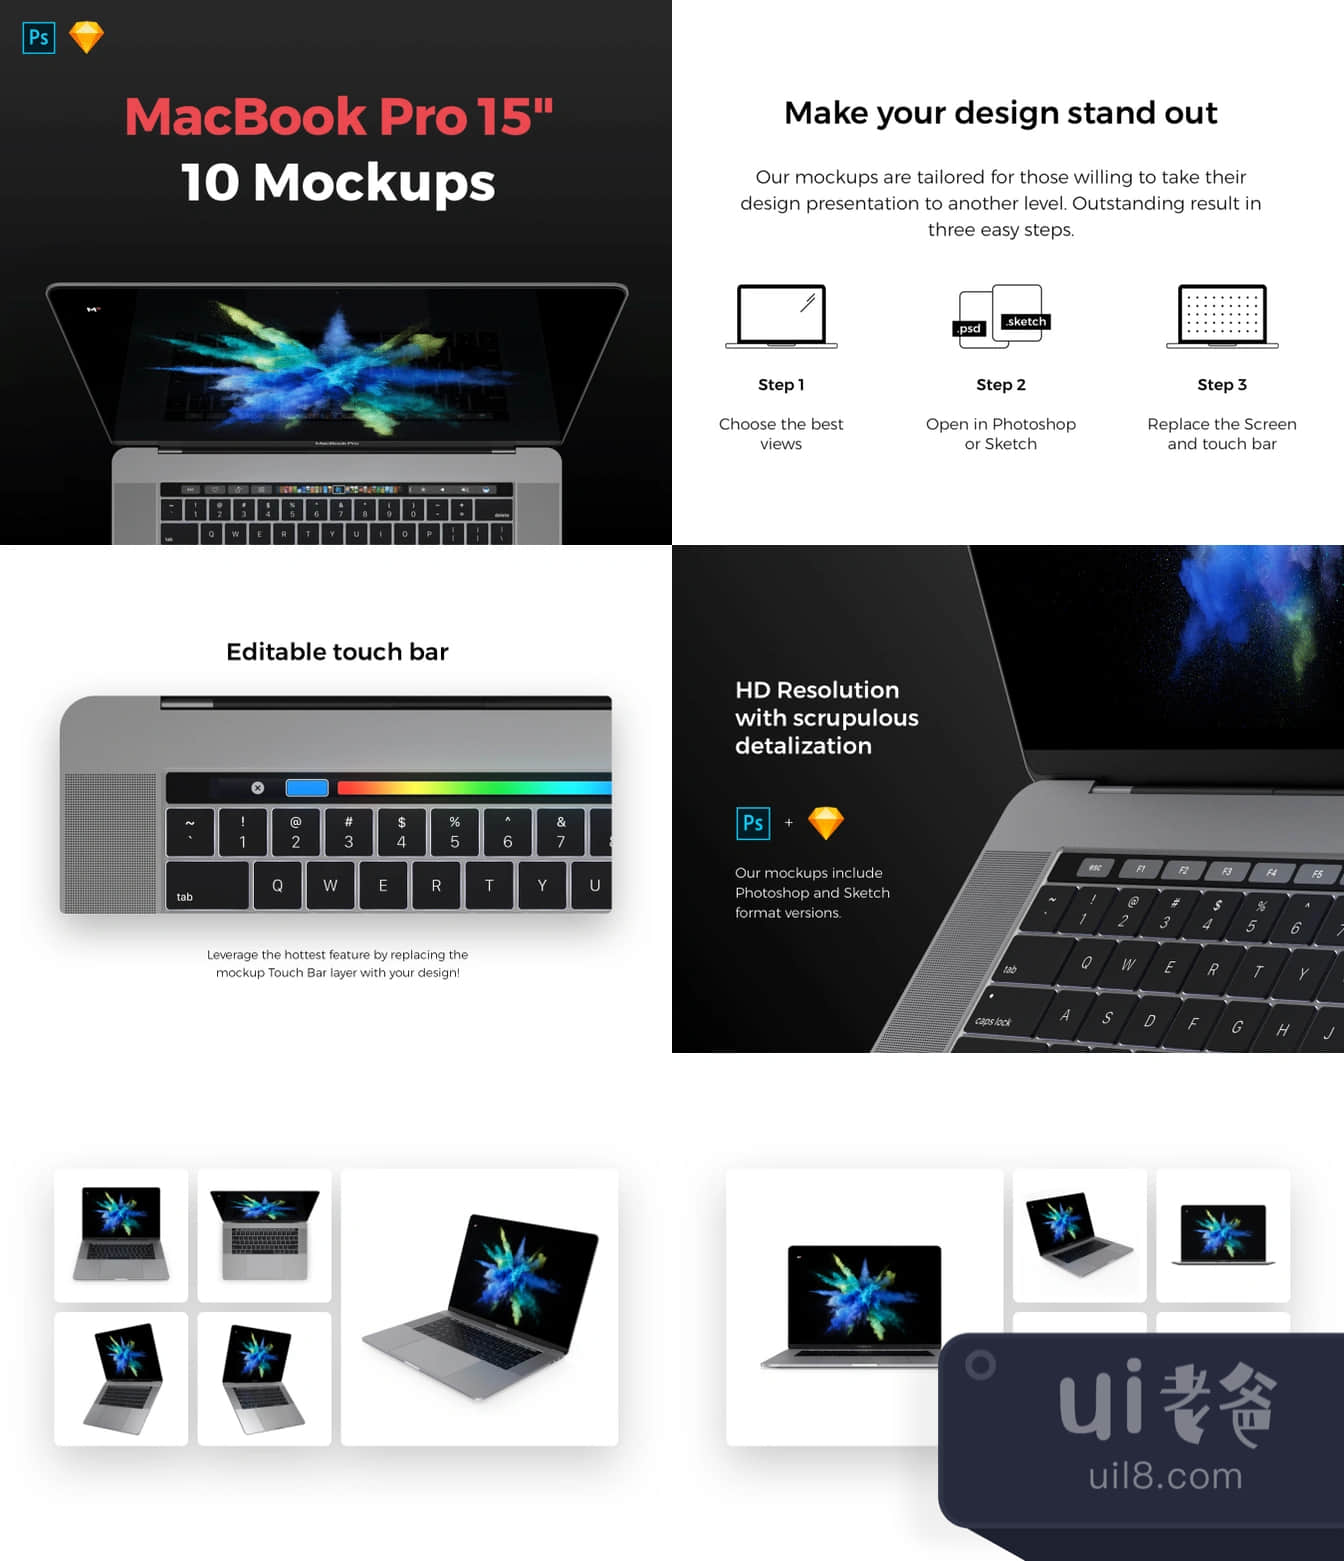 流行的MacBook Pro 15模拟图 (Popular MacBook Pro 15 Mocku插图